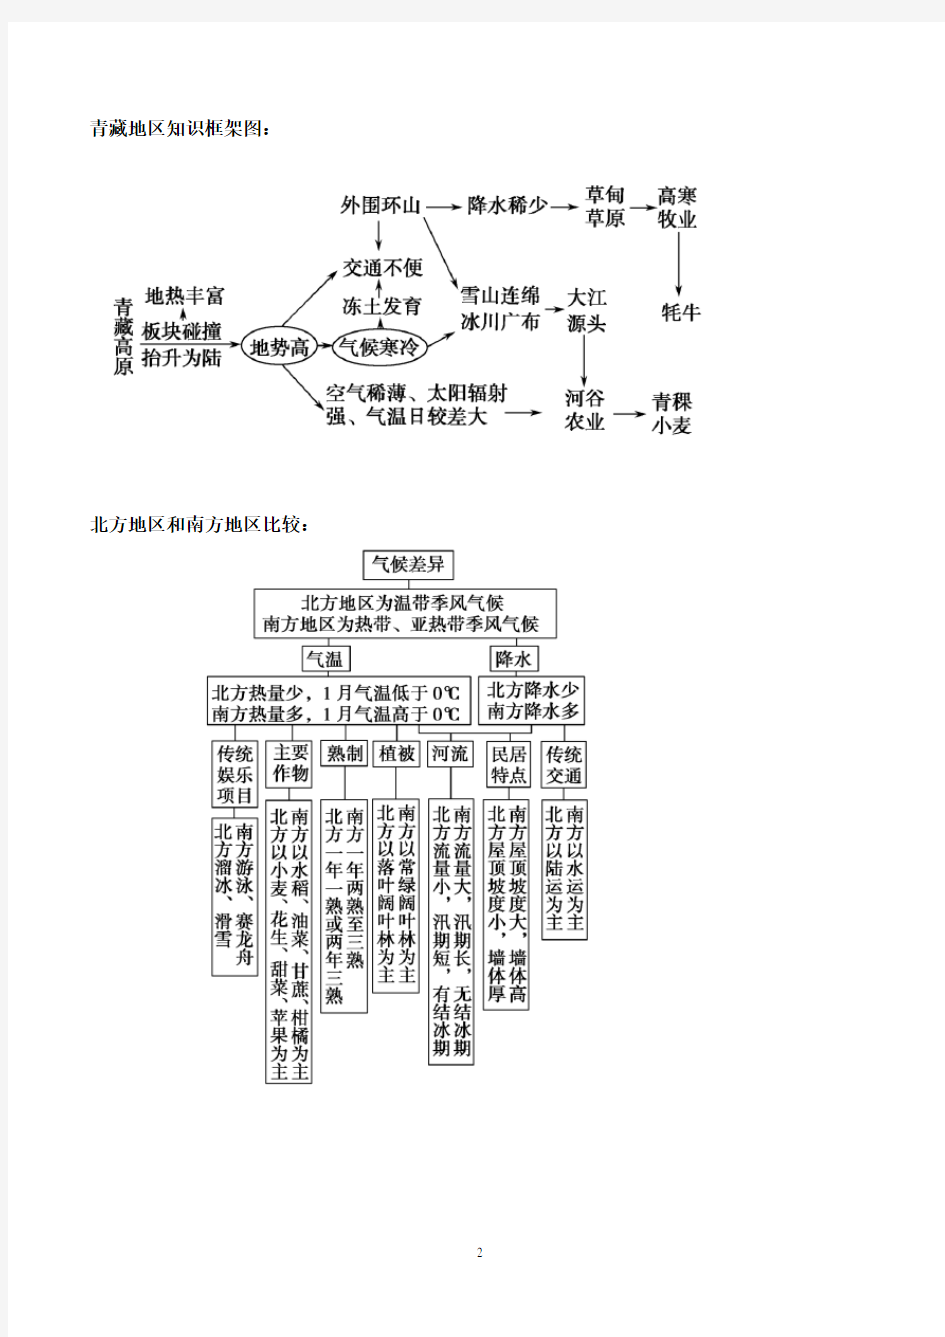 中国区域地理知识框架图